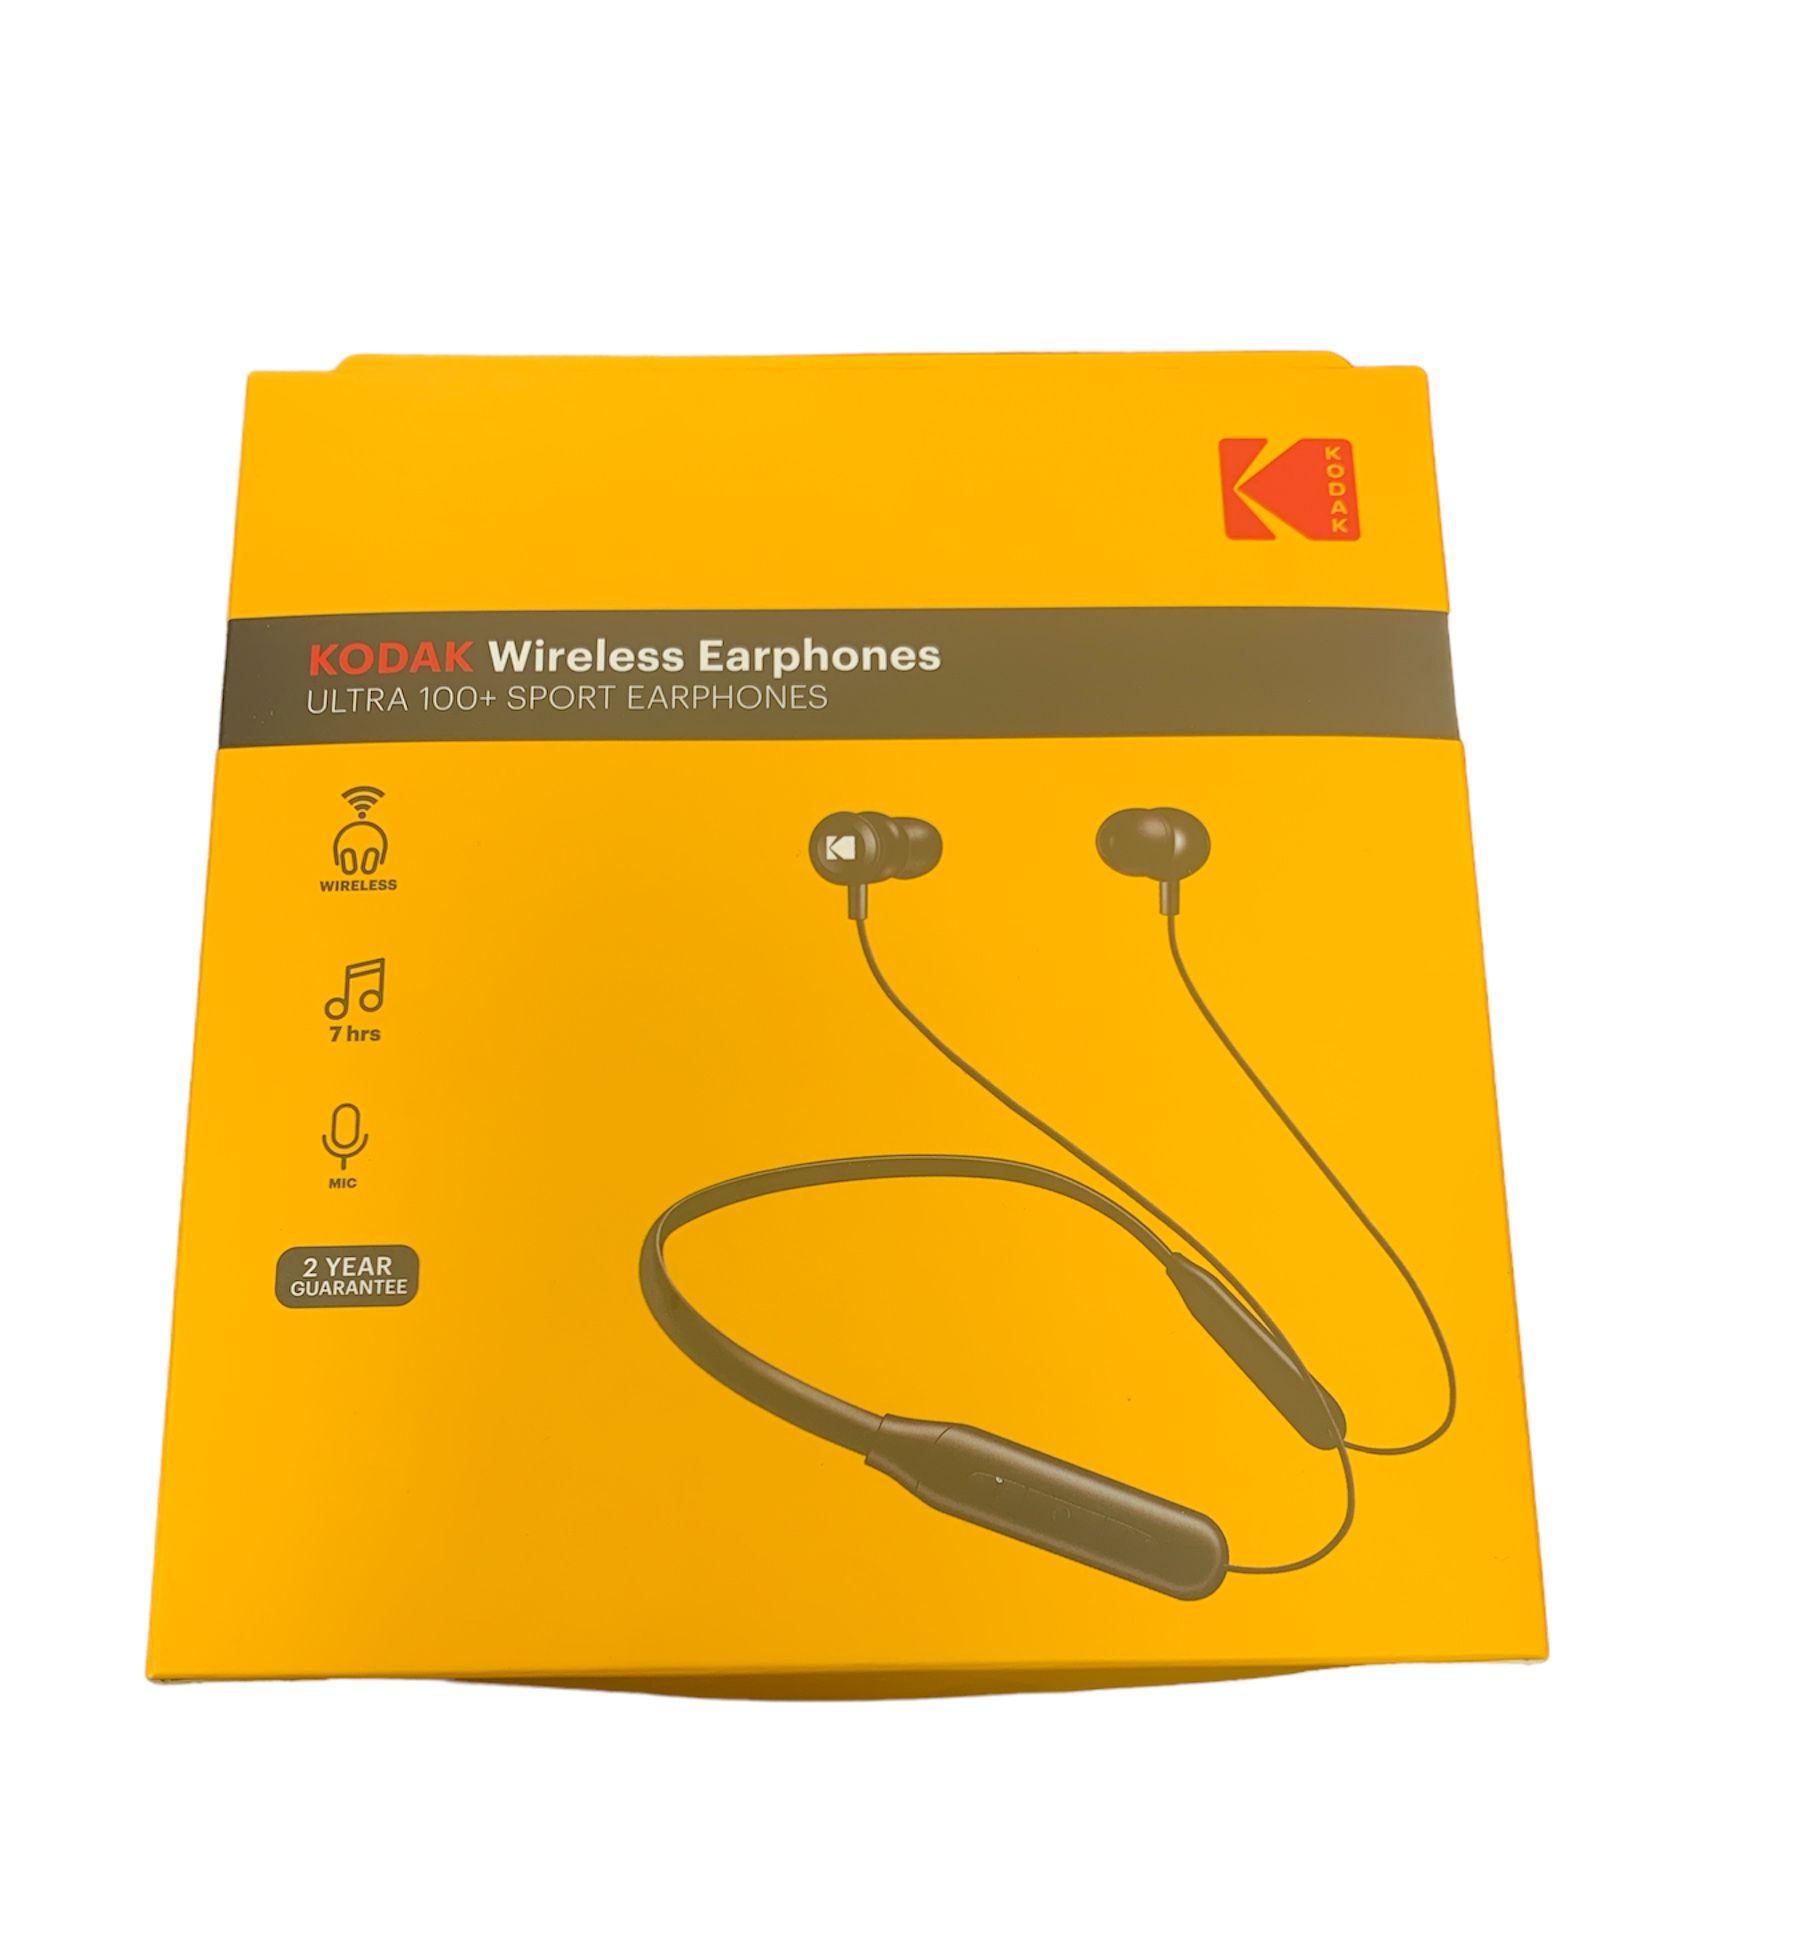 Kodak ultra 100+ Wireless earphones